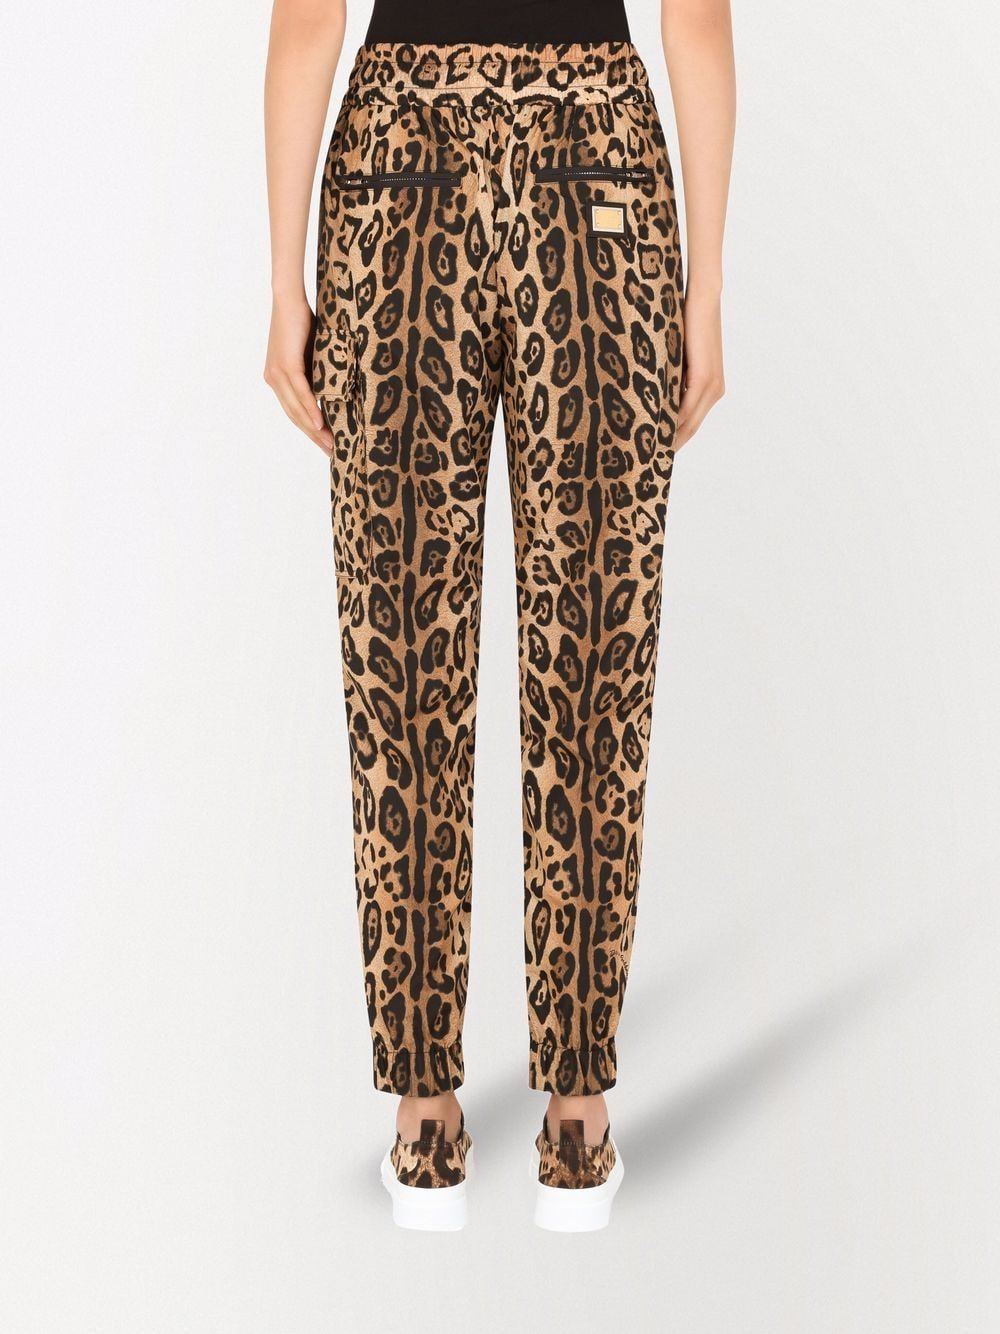 фото Dolce & gabbana спортивные брюки с леопардовым принтом